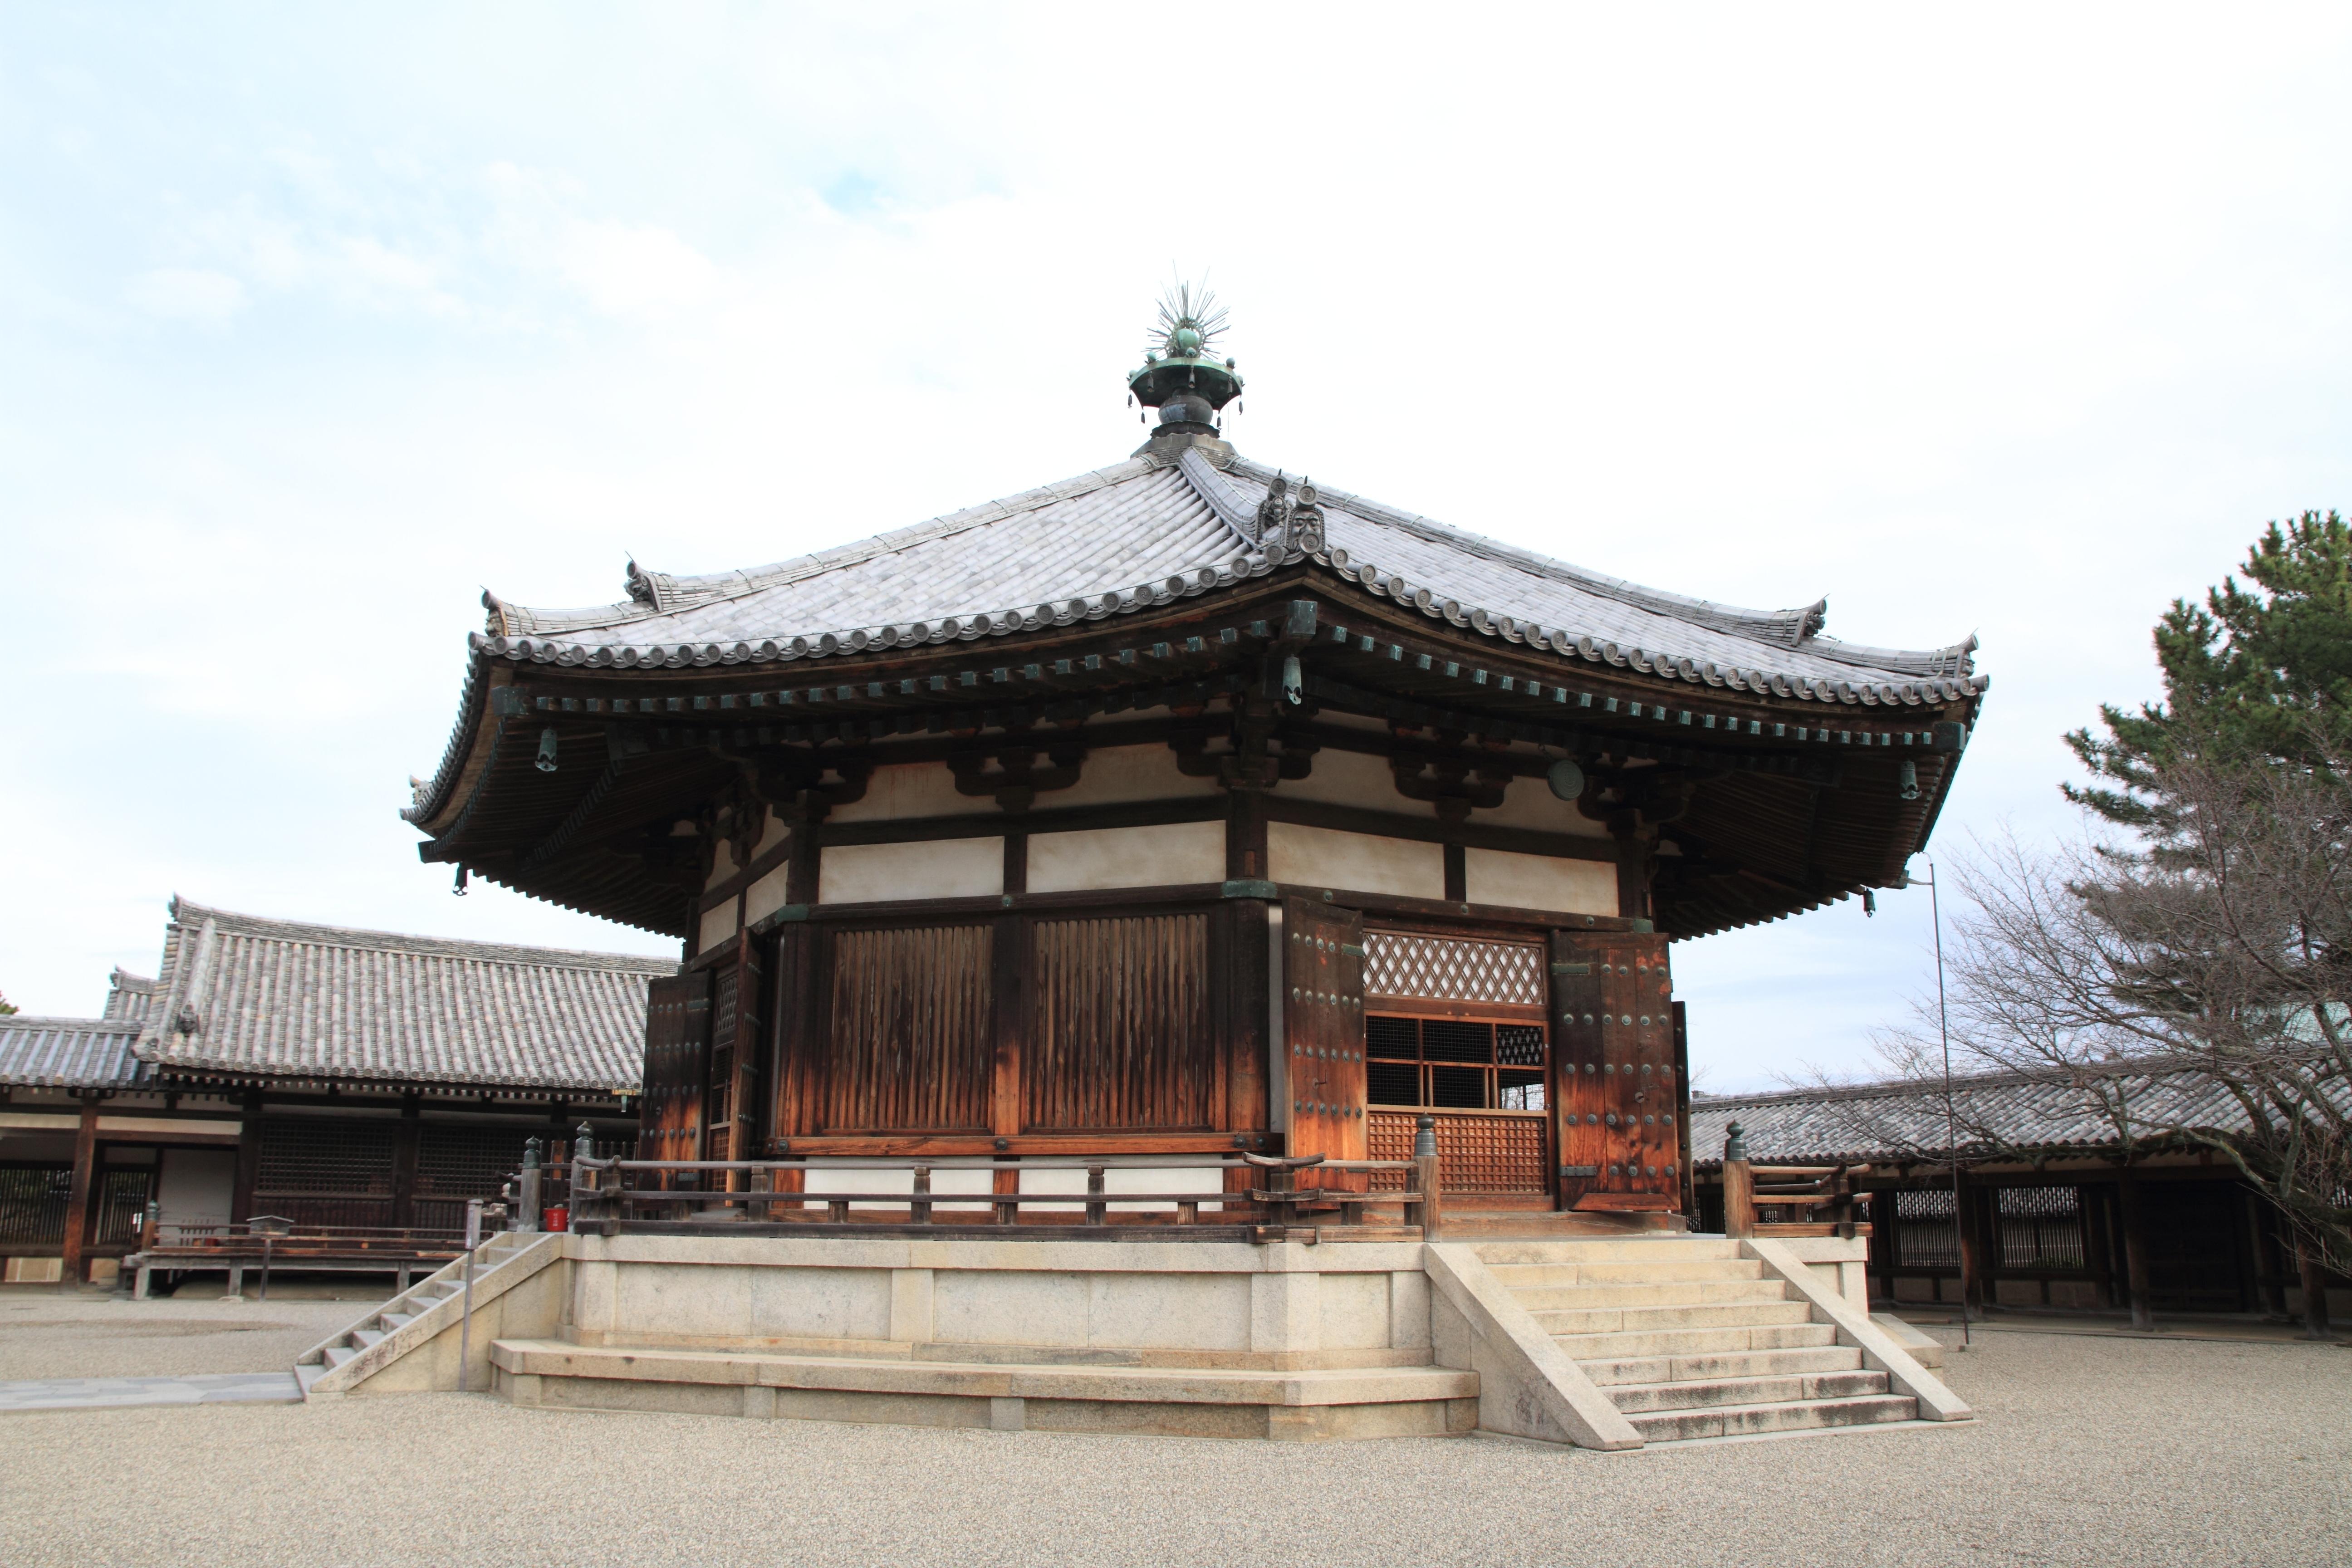 vision hall of Horyu ji in Nara, Japan